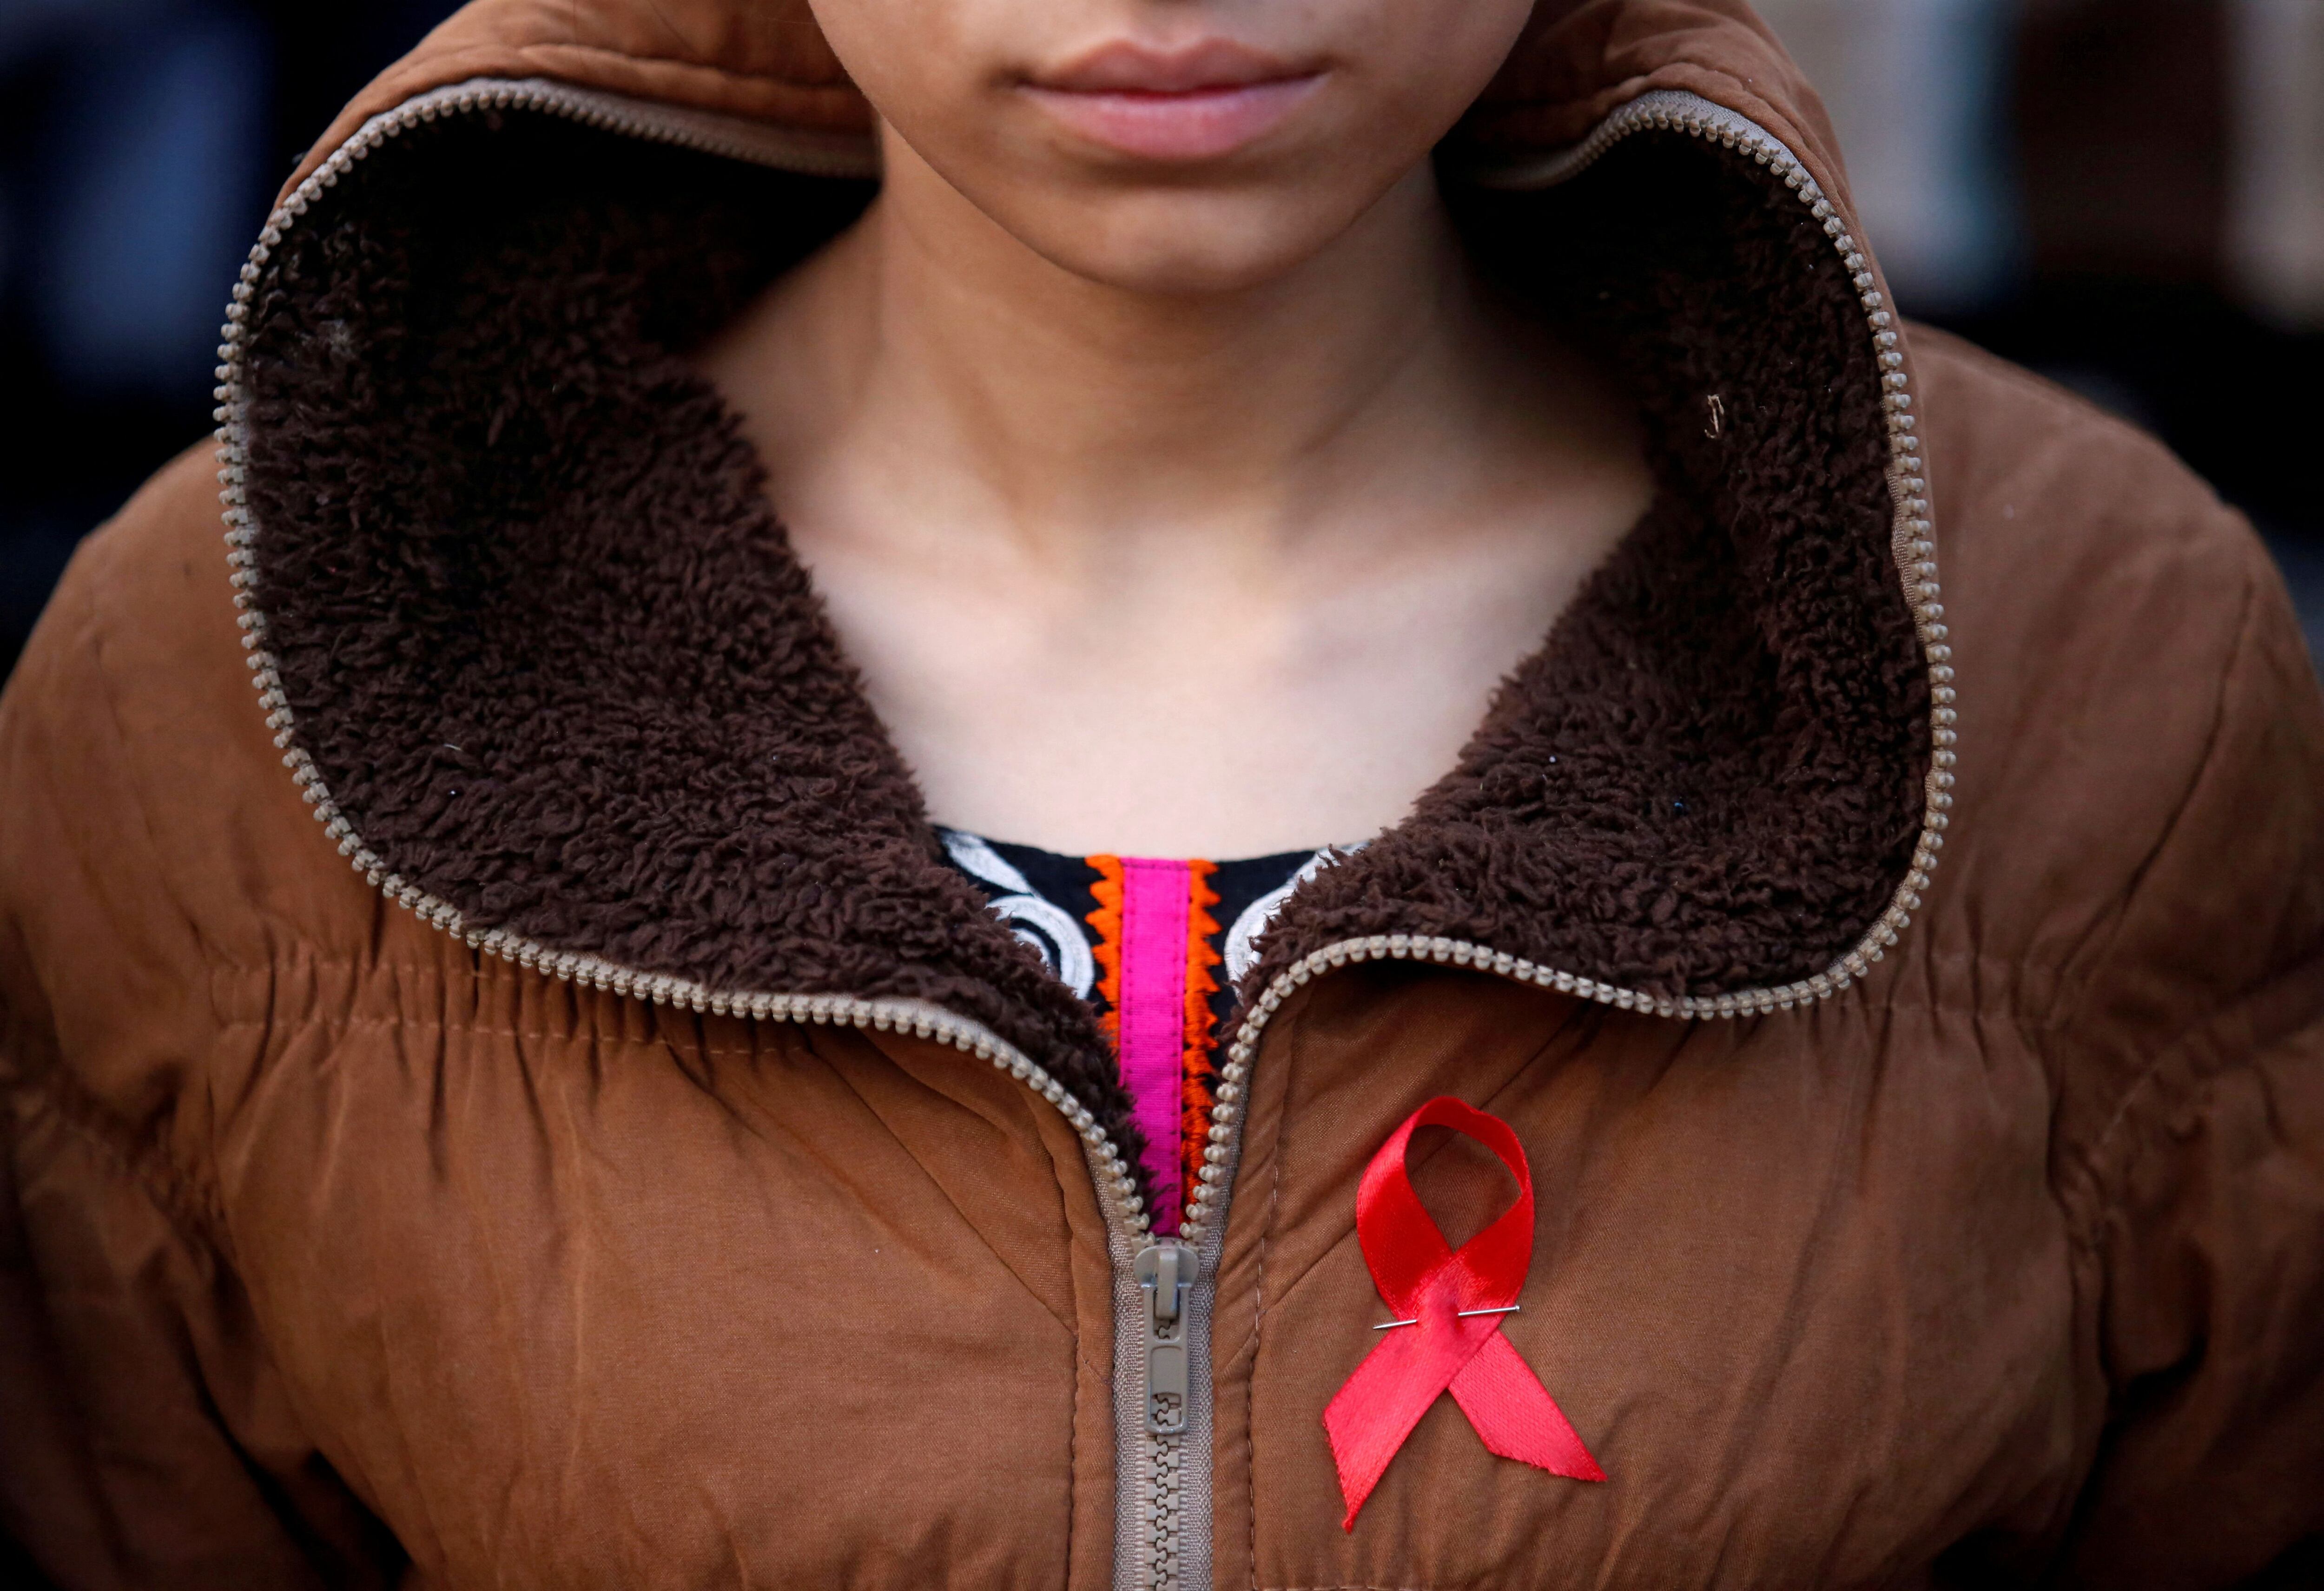 Según la Clínica Mayo, "el síndrome de inmunodeficiencia adquirida (sida) es una afección crónica que pone en riesgo la vida provocada por el virus de la inmunodeficiencia humana (VIH)" (REUTERS)